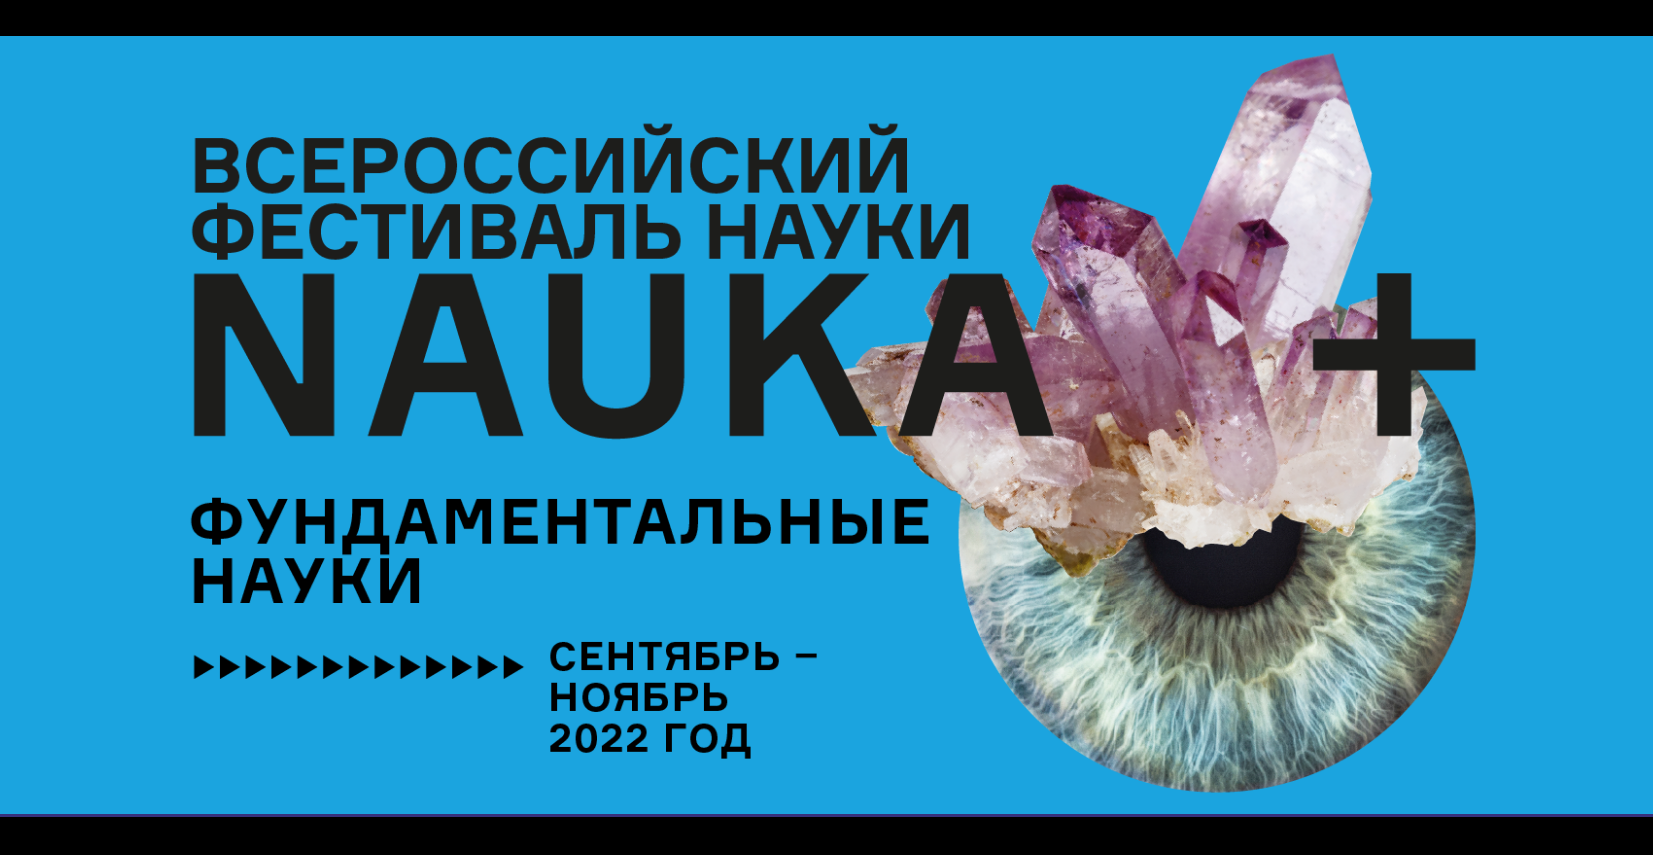 Всероссийский фестиваль науки NAUKA 0+ в Институте философии РАН, сентябрь-ноябрь 2022 г.